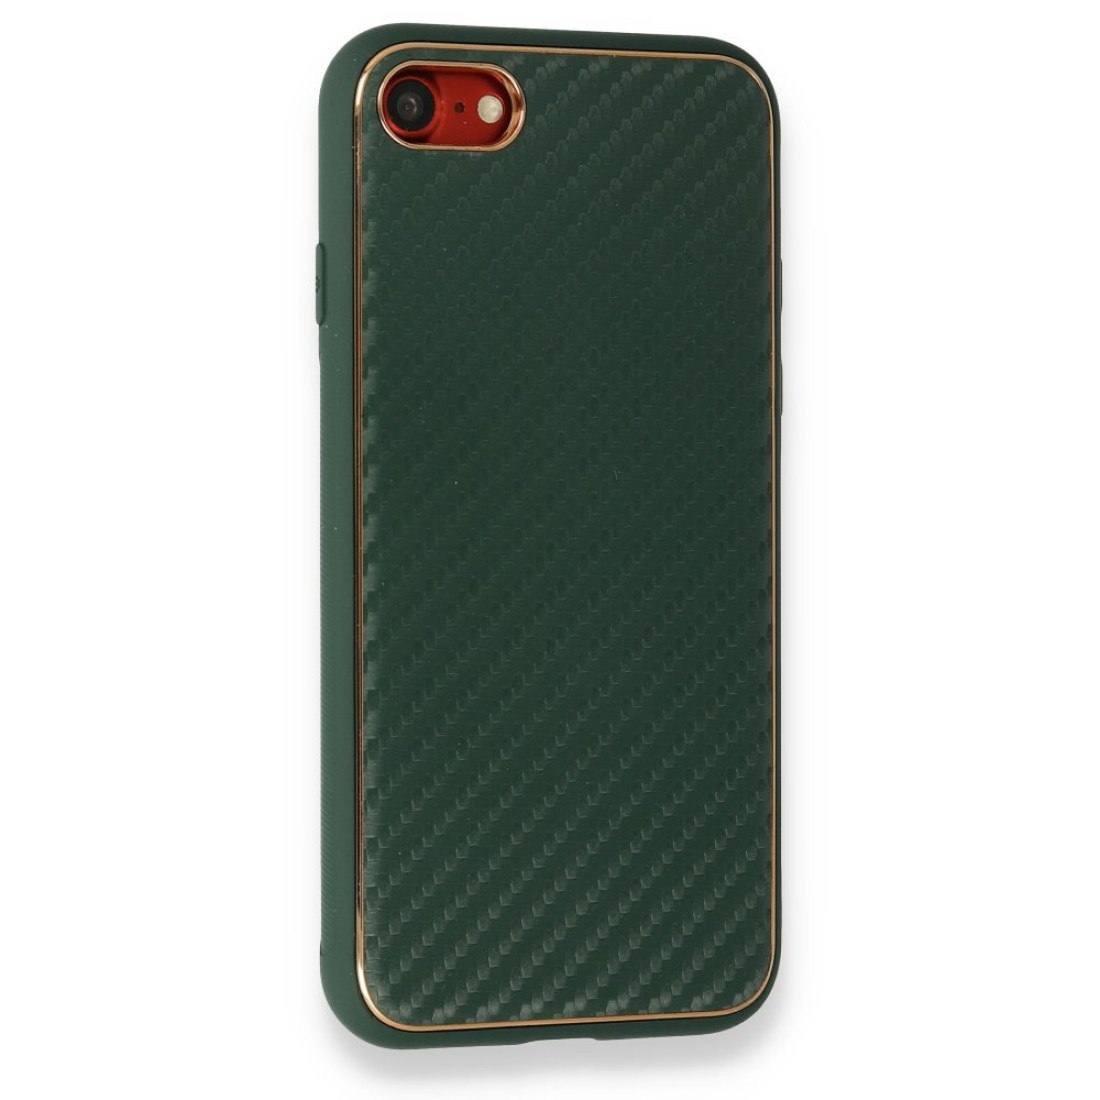 Apple iPhone 8 Kılıf Coco Karbon Silikon - Yeşil